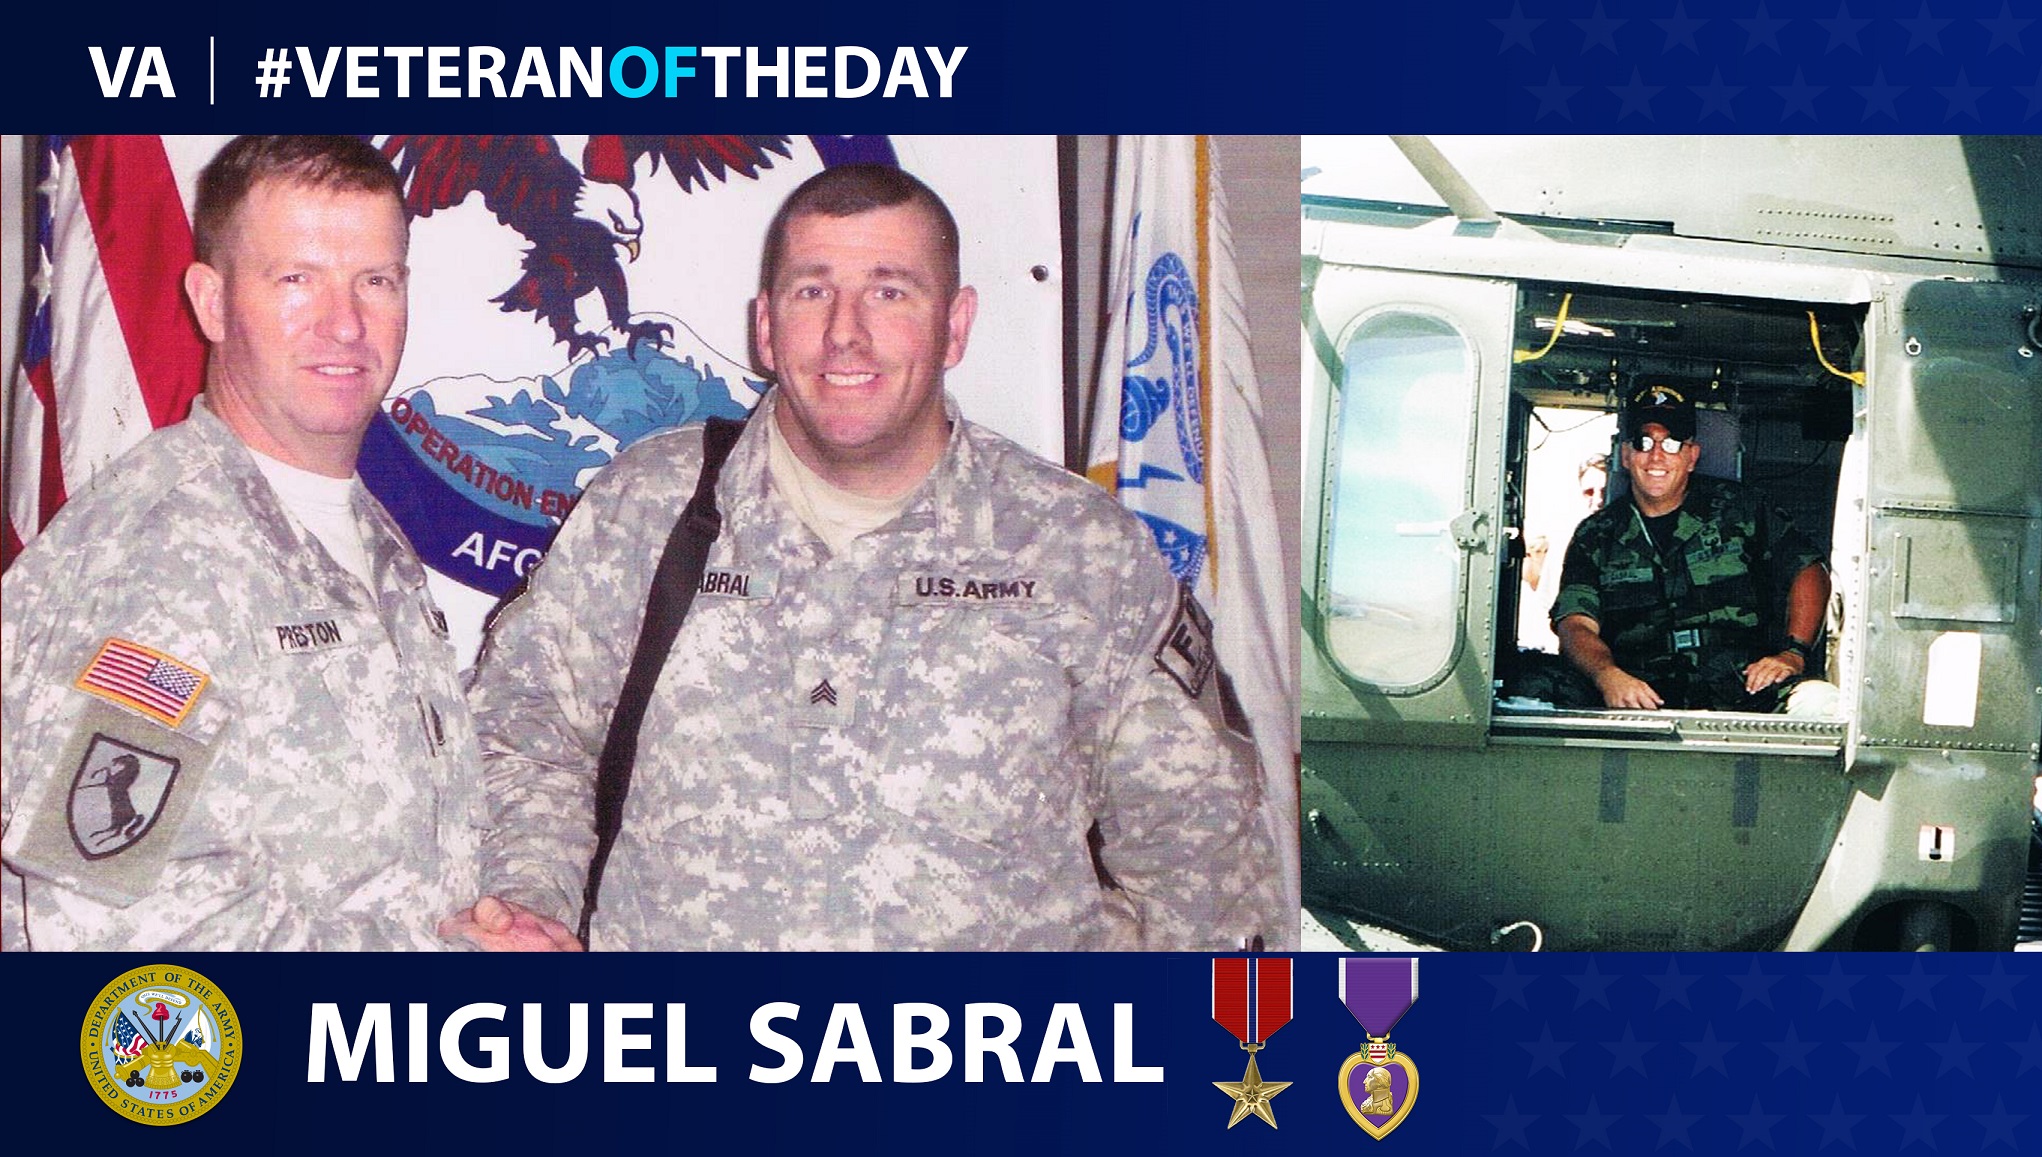 #VeteranoftheDay Miguel Sabral